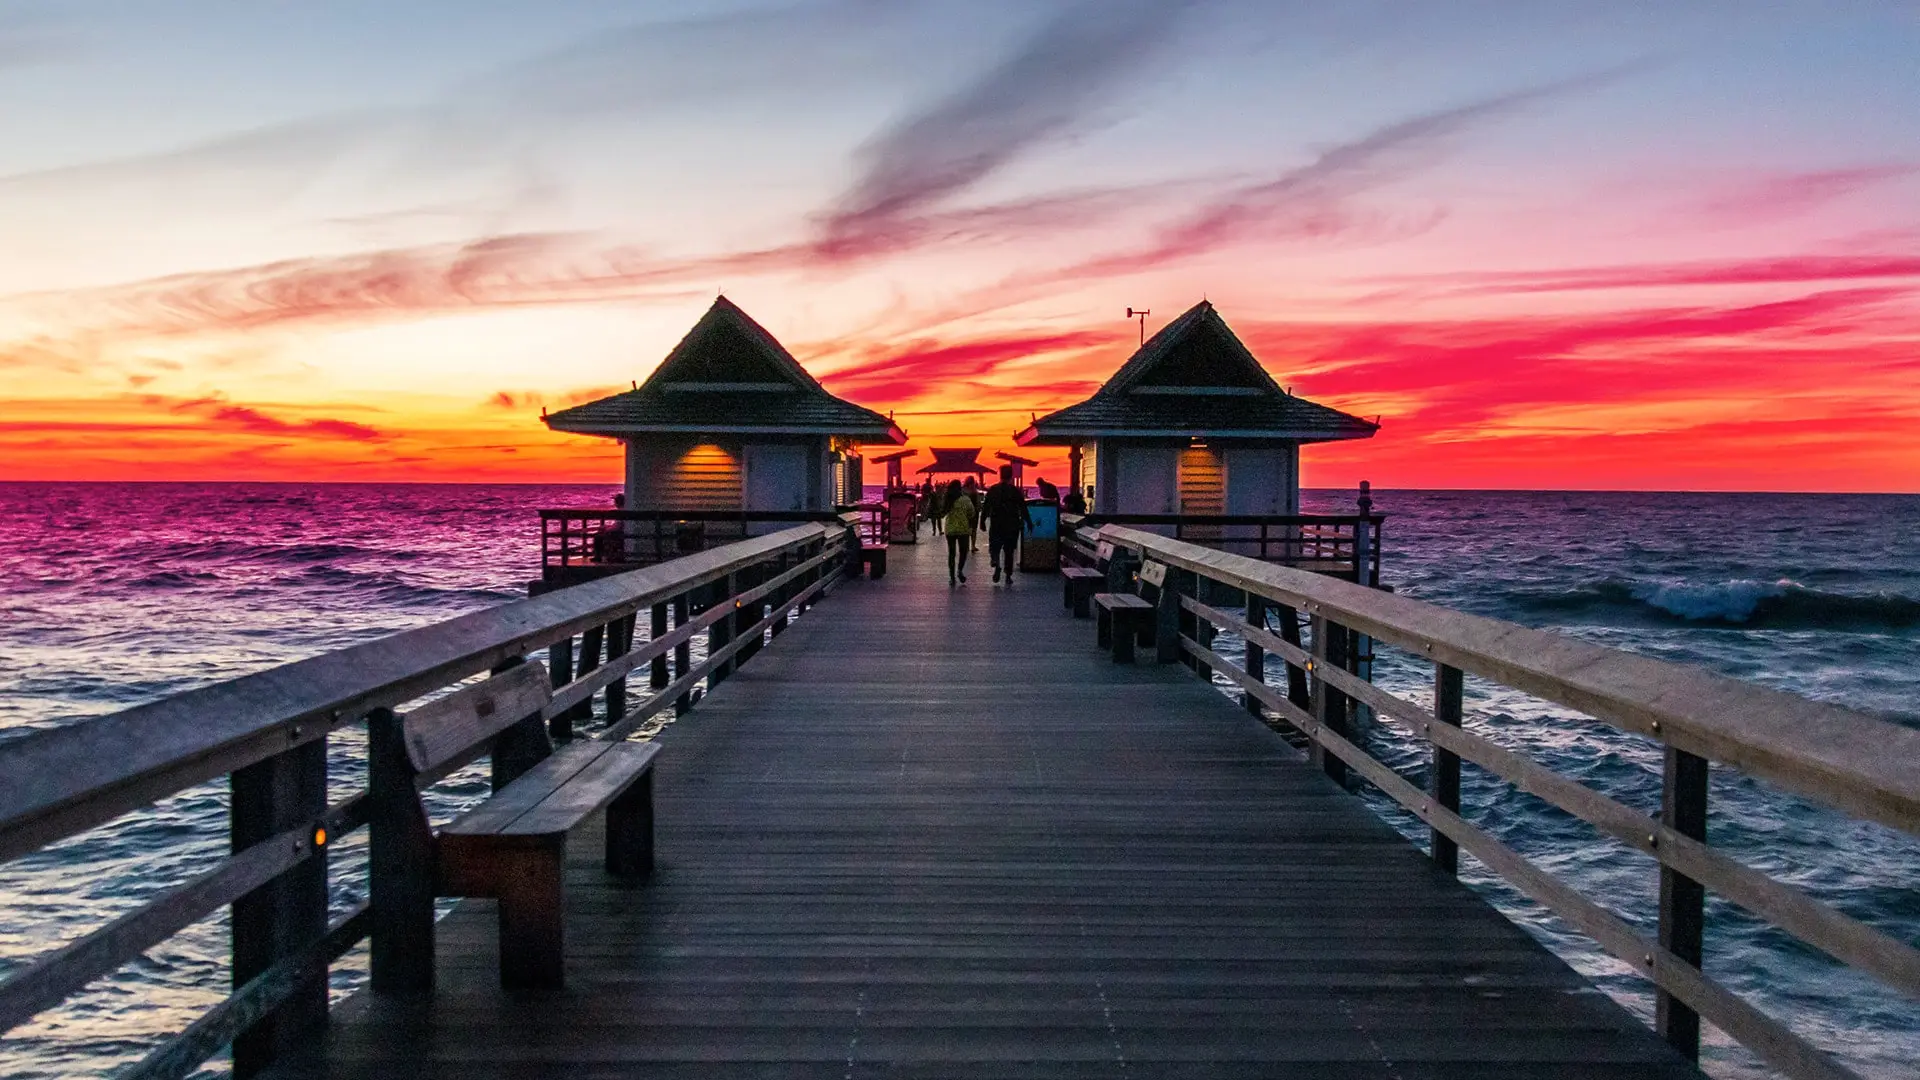 Florida Pier at sunset